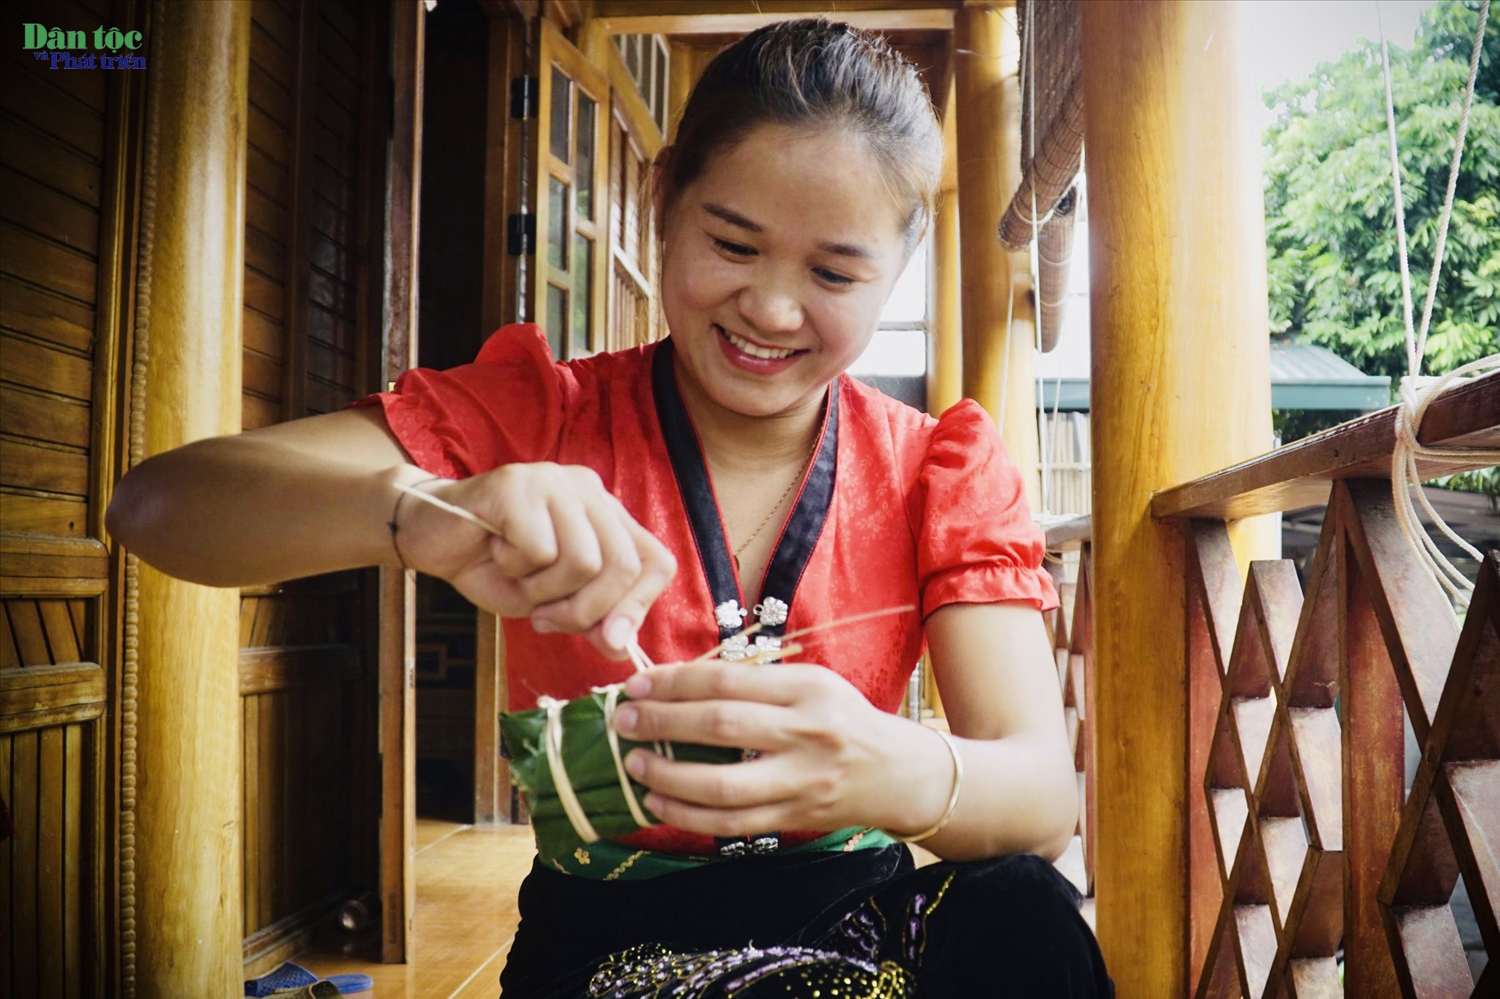 Thiếu nữ Thái Mường So hạnh phúc khi người già trao truyền kinh nghiệm gói bánh